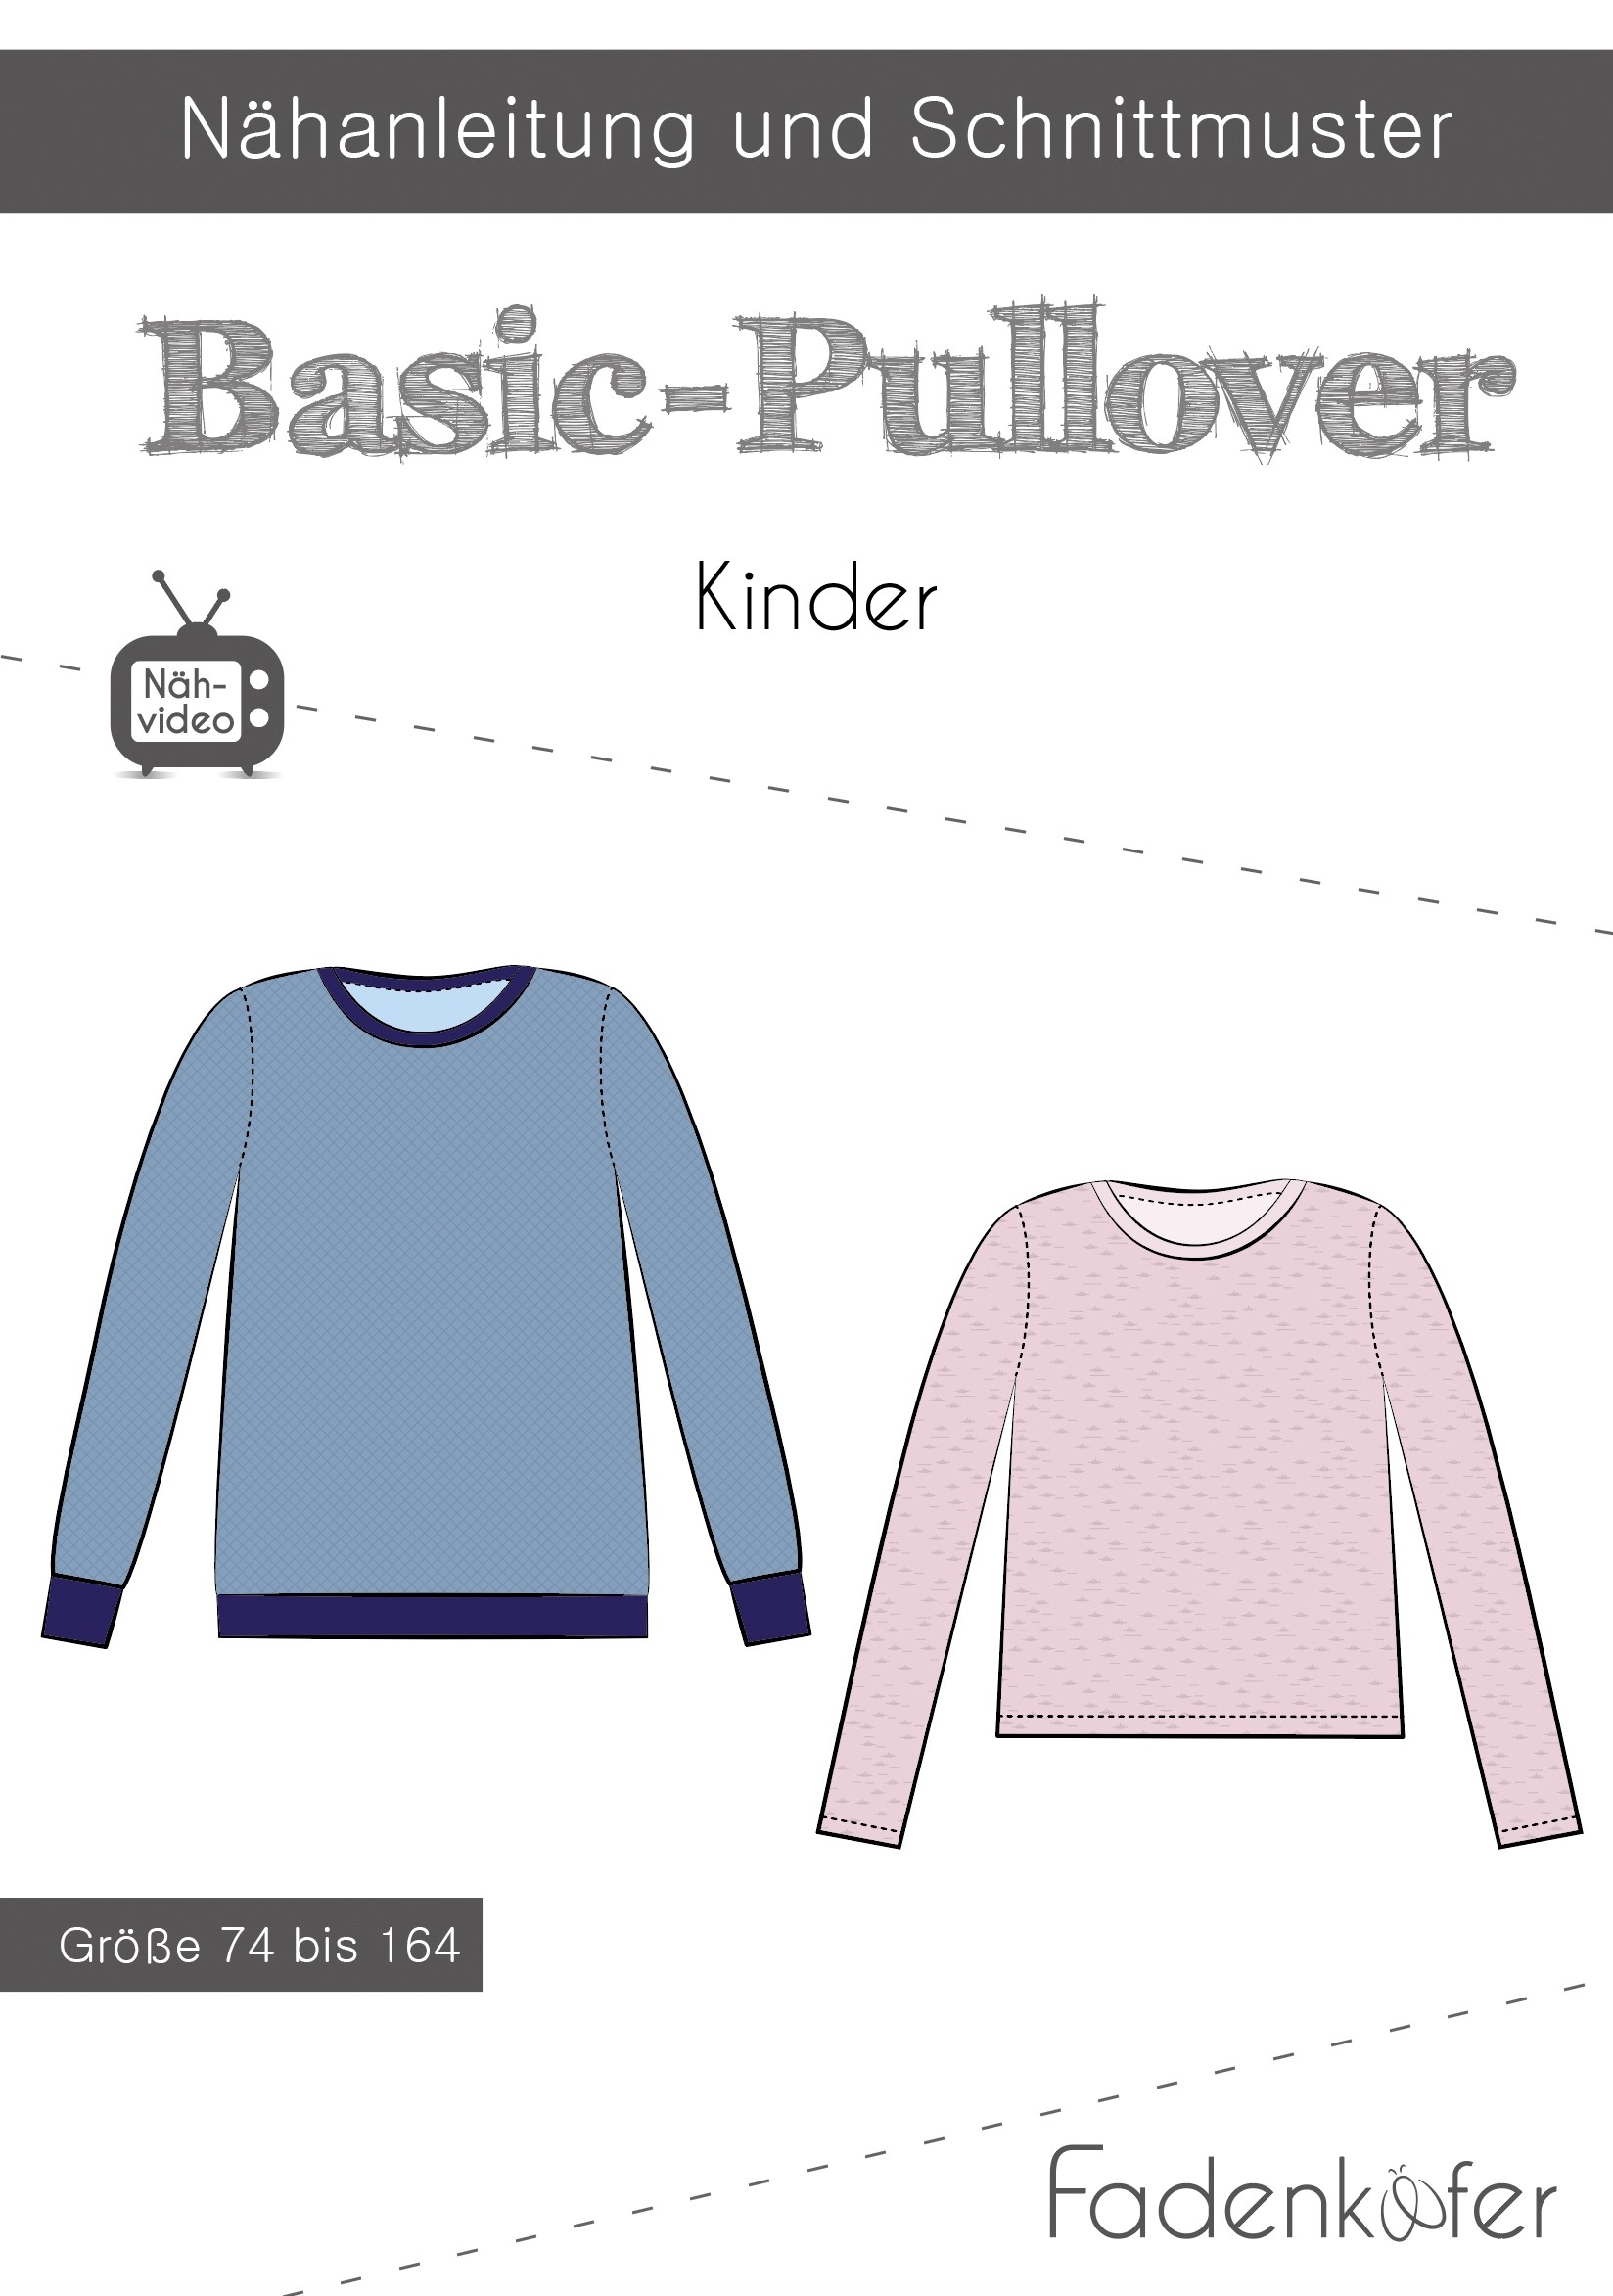 Papierschnittmuster Fadenkäfer - Basic Pullover Kinder